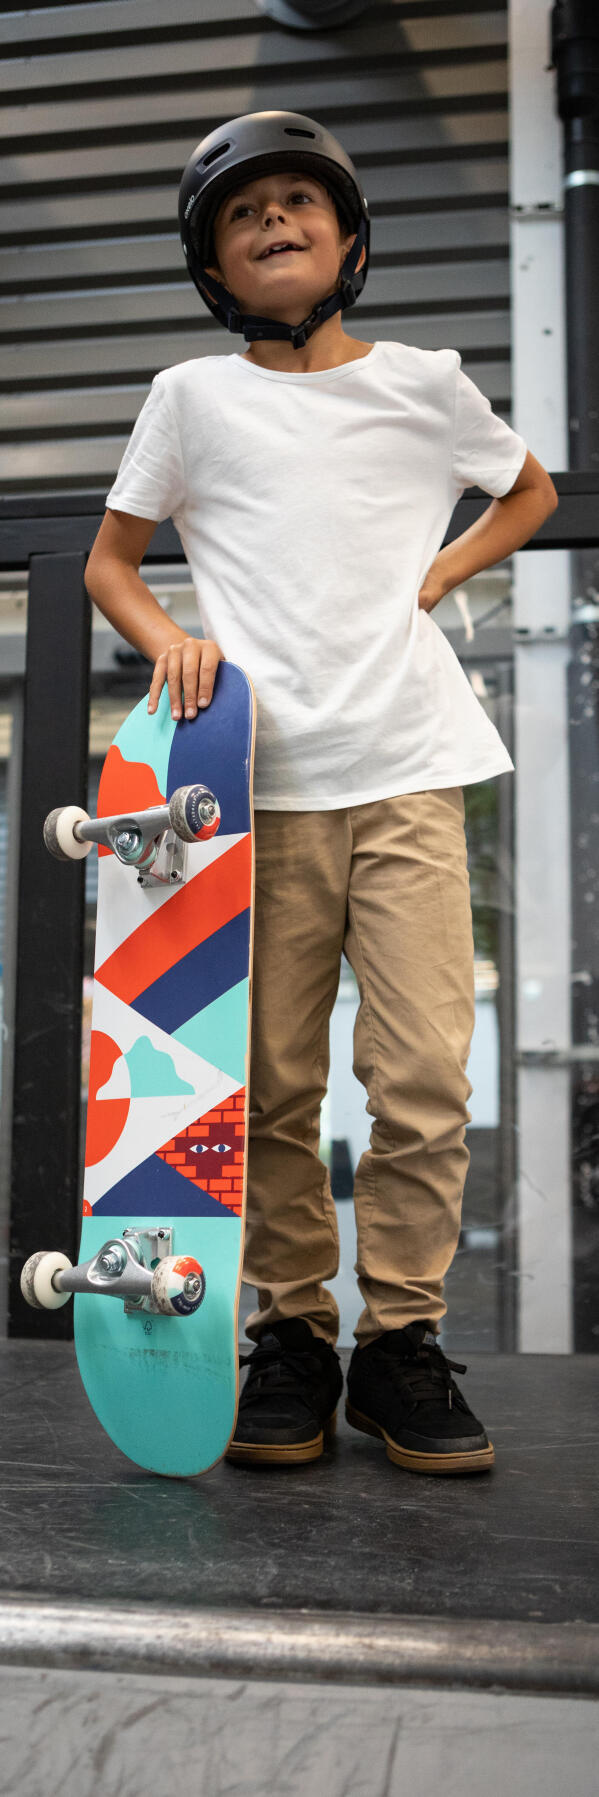 Le skateboard pour votre enfant : 5 bienfaits insoupçonnés